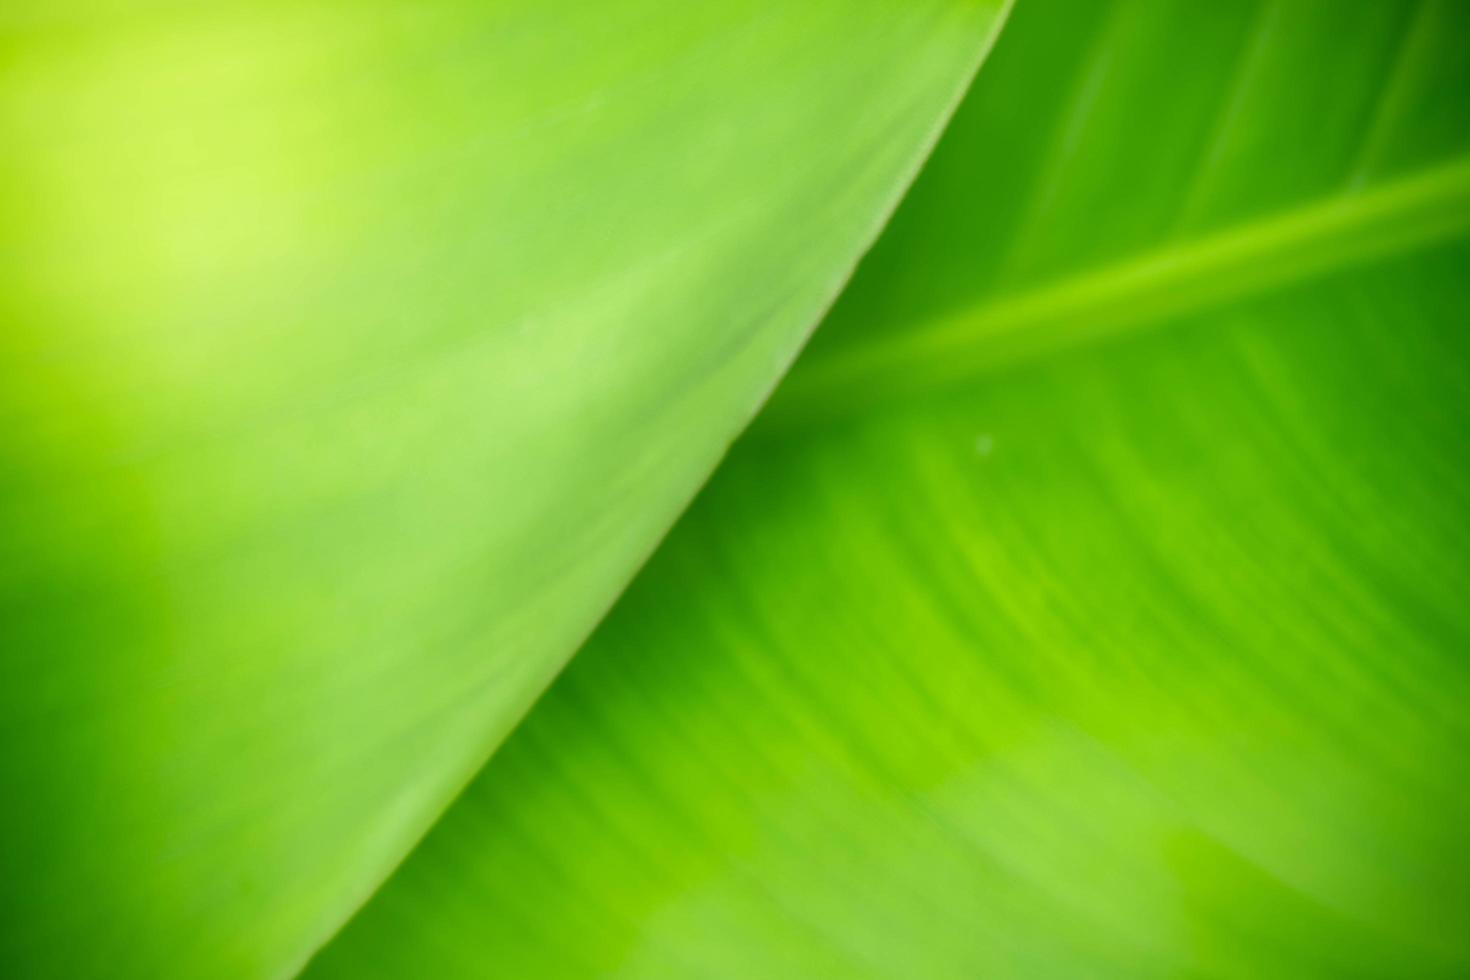 fondo abstracto naturaleza de hoja verde sobre fondo verde borroso en el jardín. hojas verdes naturales plantas utilizadas como fondo de primavera portada vegetación medio ambiente ecología papel tapiz verde lima foto